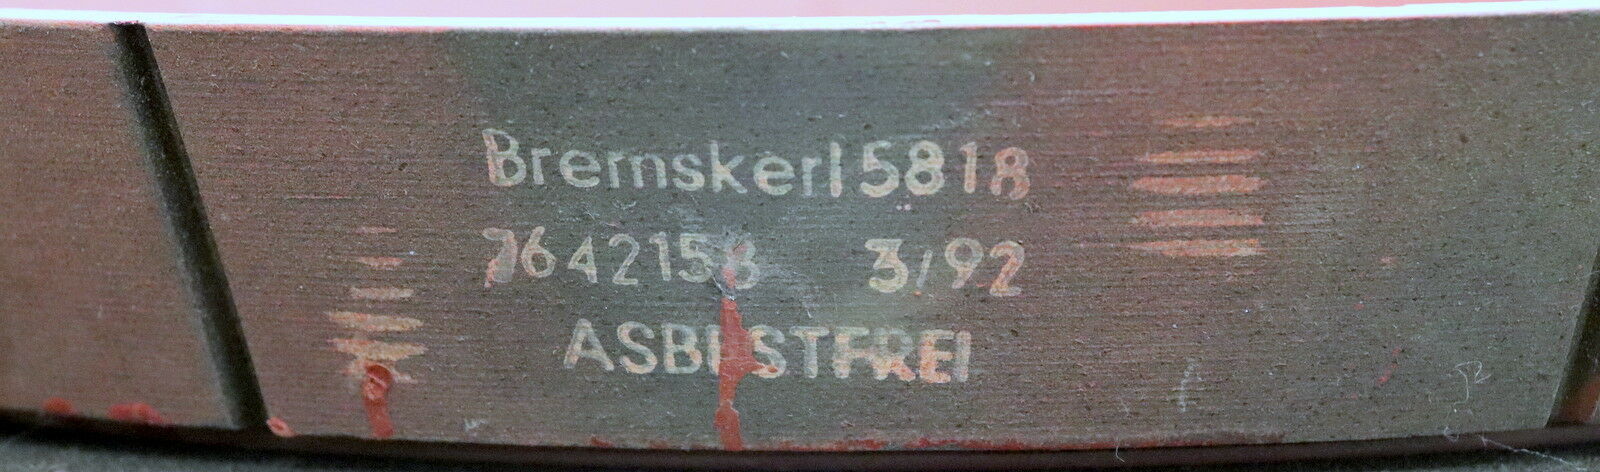 BREMSKERL konischer Bremsbelag für Kranfahrwerk BK 5818 7642158 asbestfrei